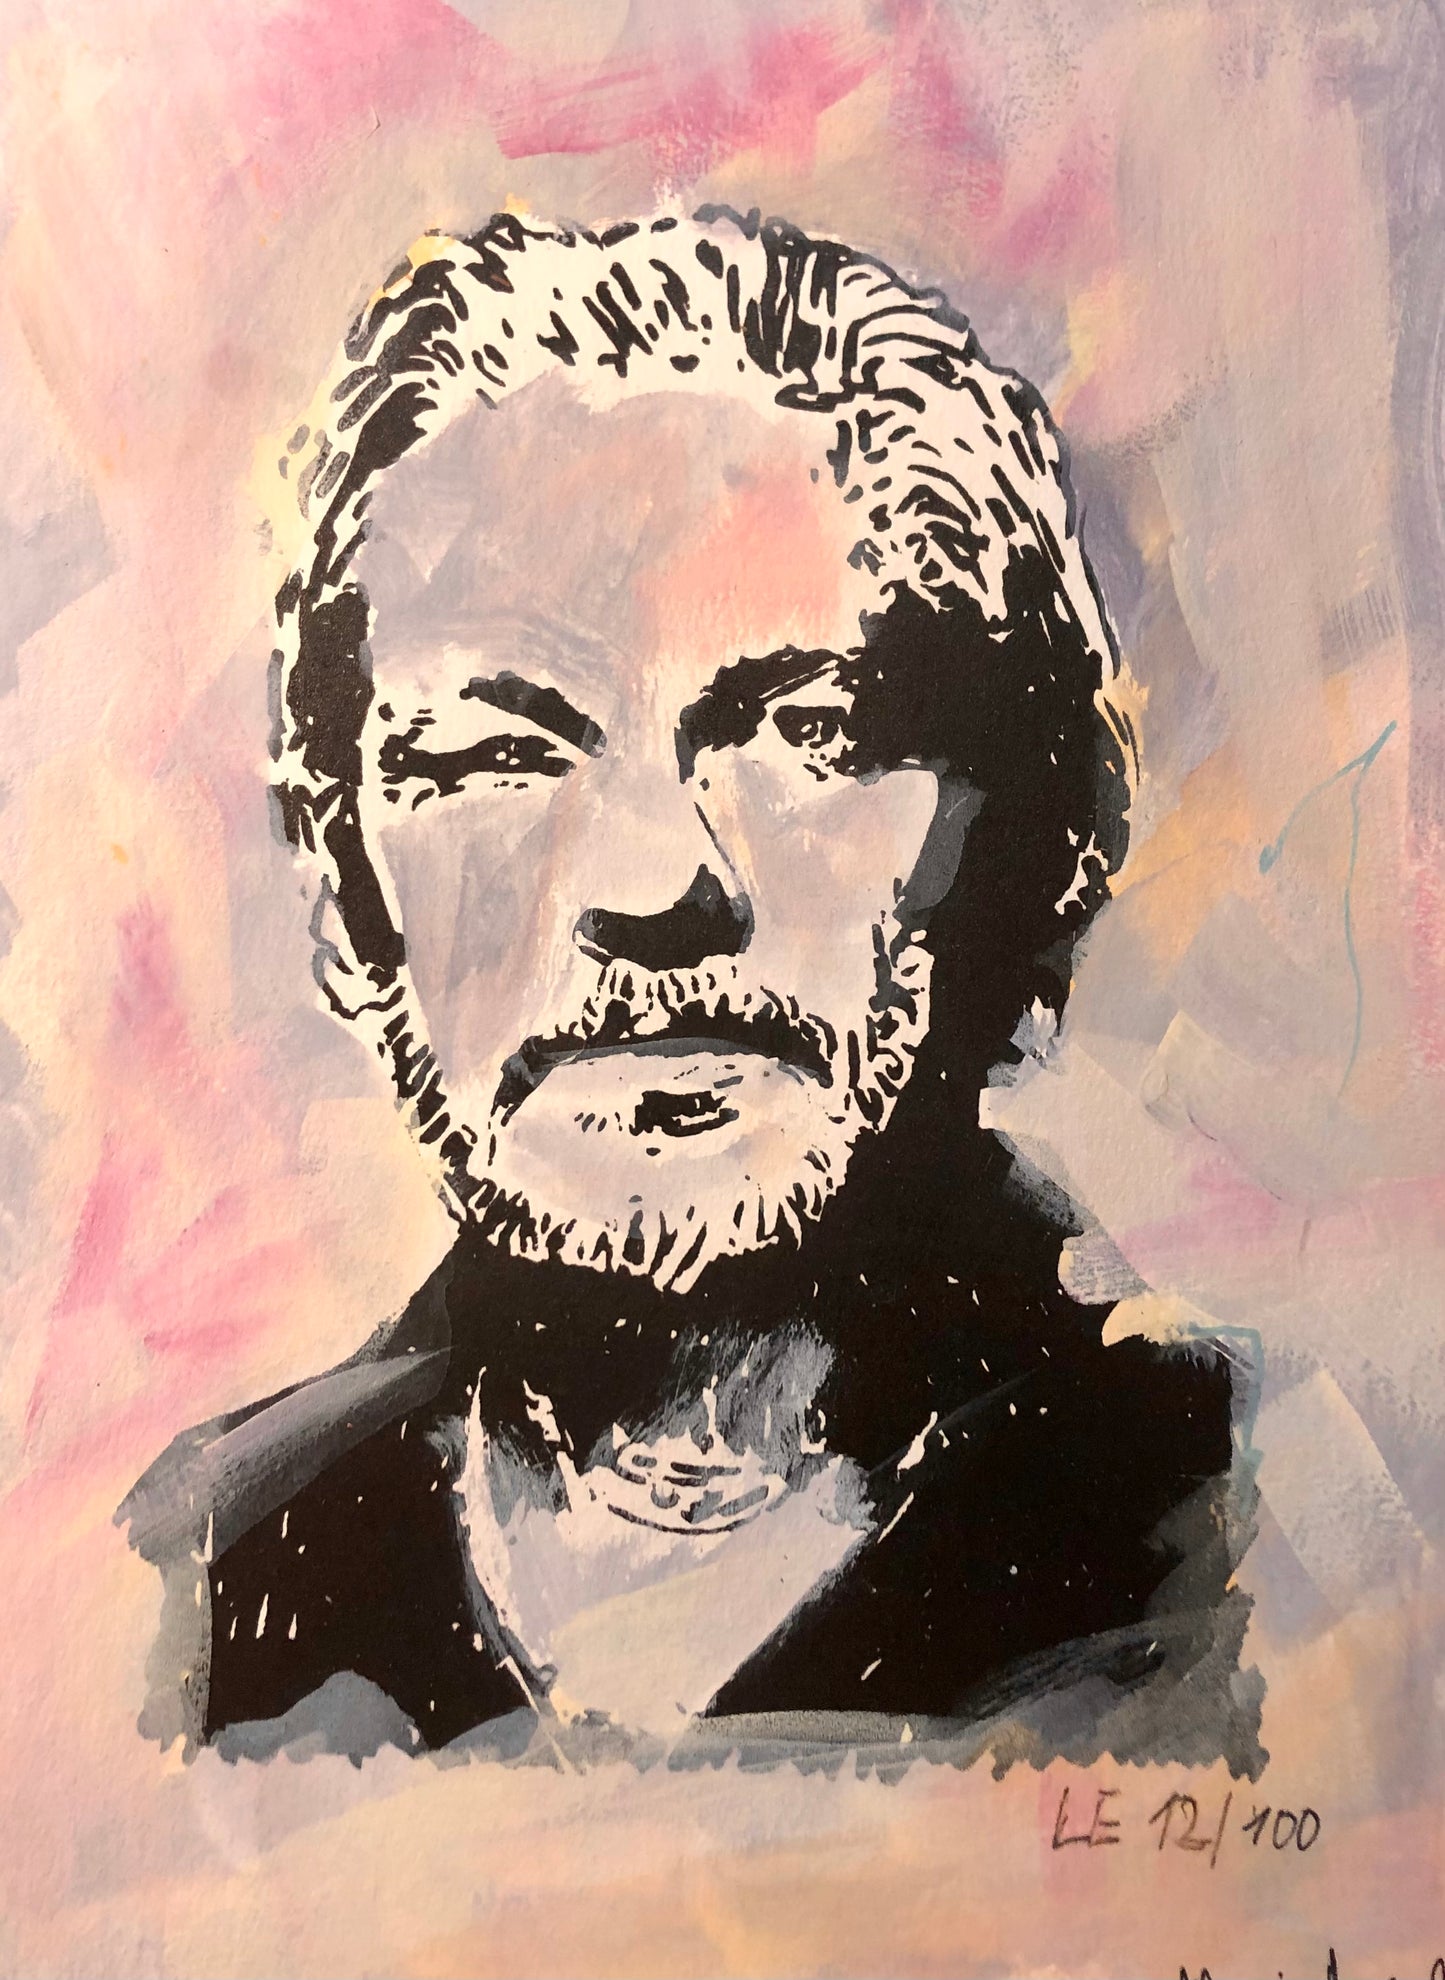 Julian Assange Portrait - Limited Edition No. 12/100